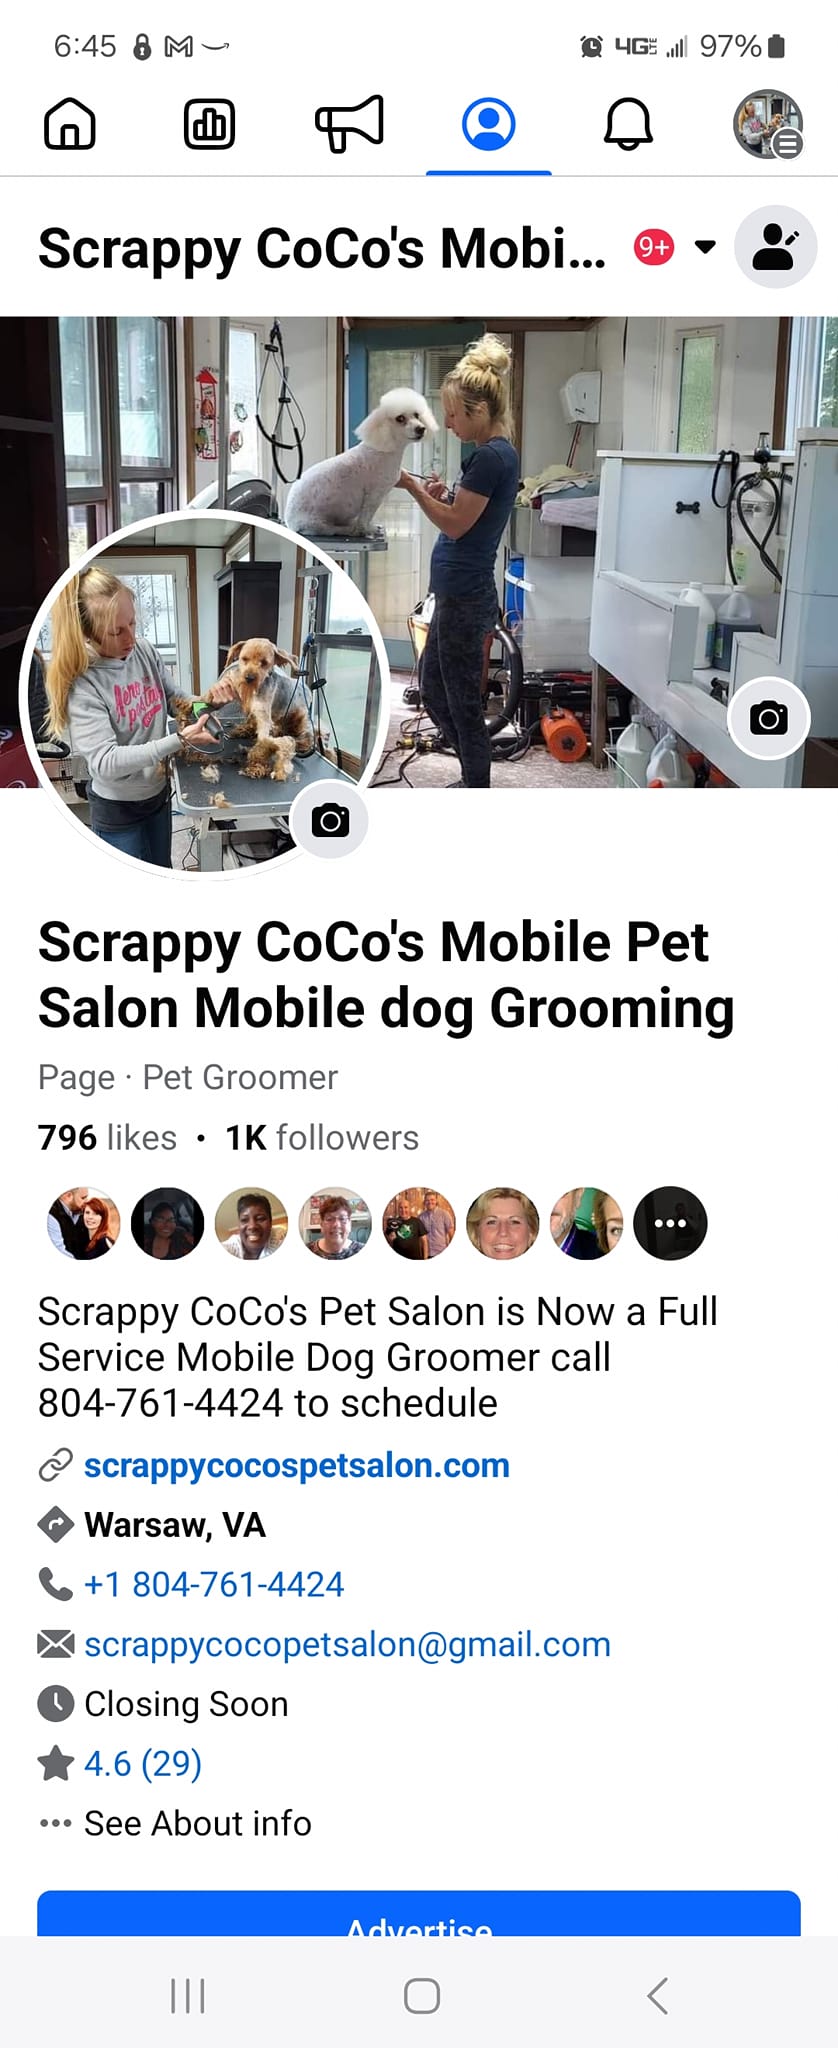 Scrappy Coco's Pet Salon 1733 Rich Neck Rd, Warsaw Virginia 22572